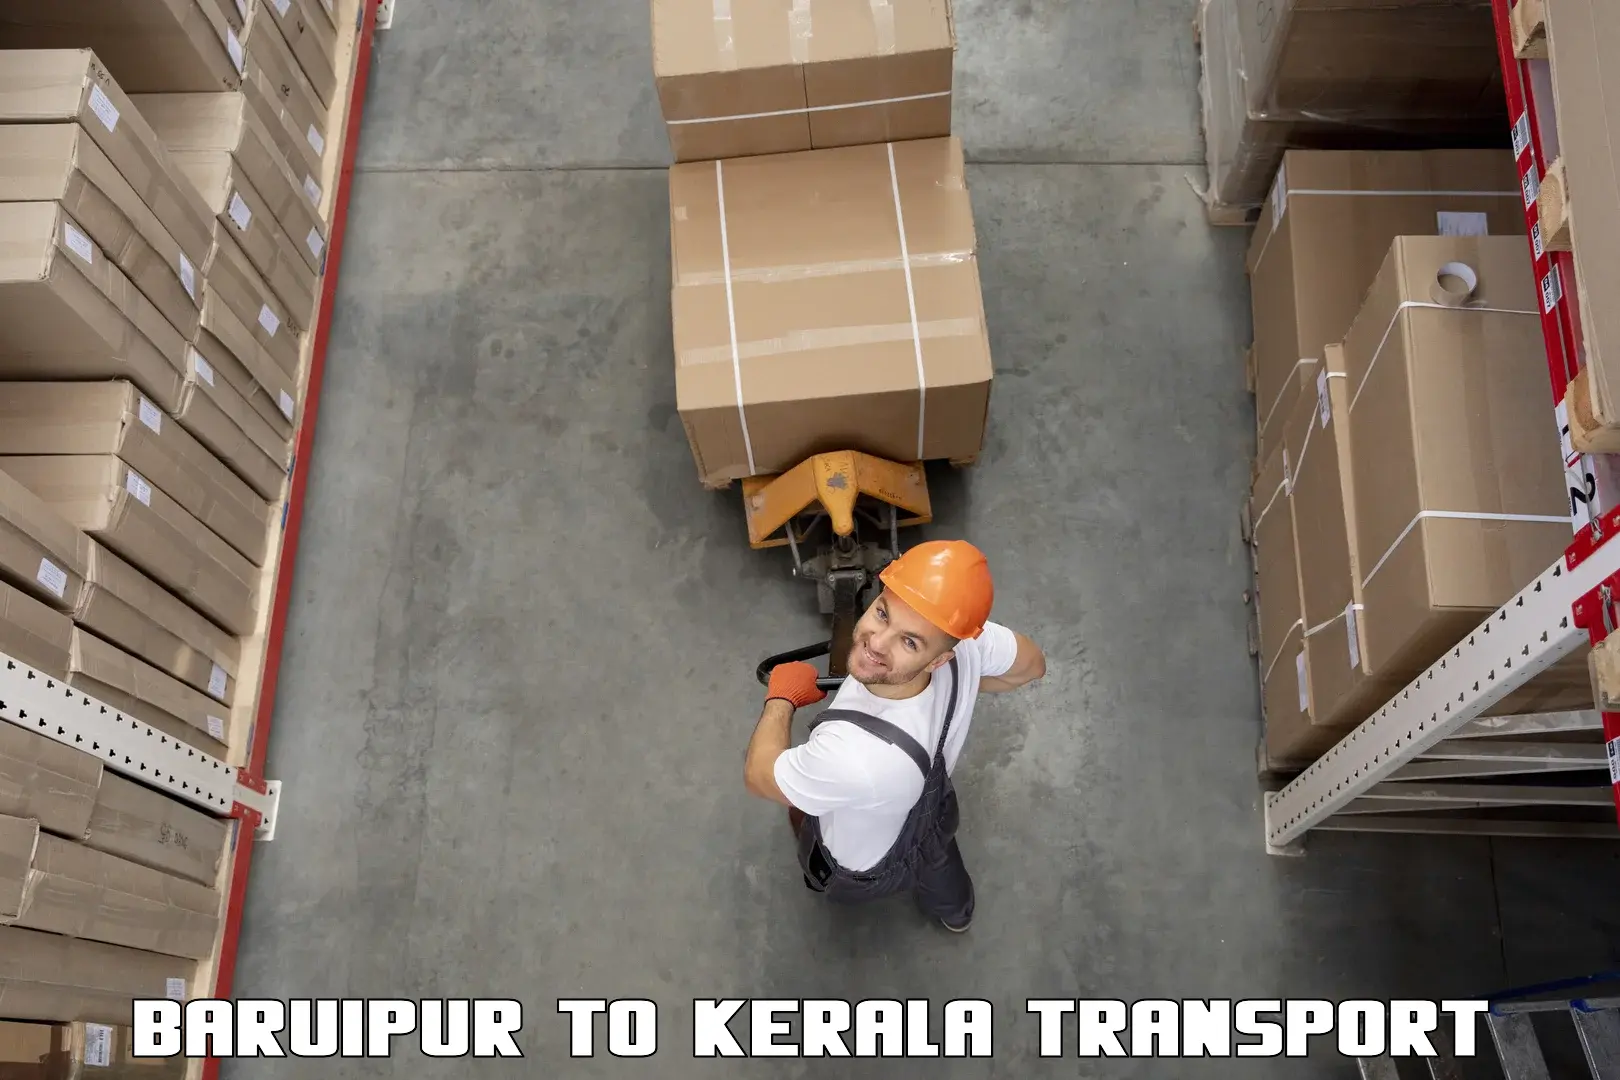 Truck transport companies in India Baruipur to Kalluvathukkal